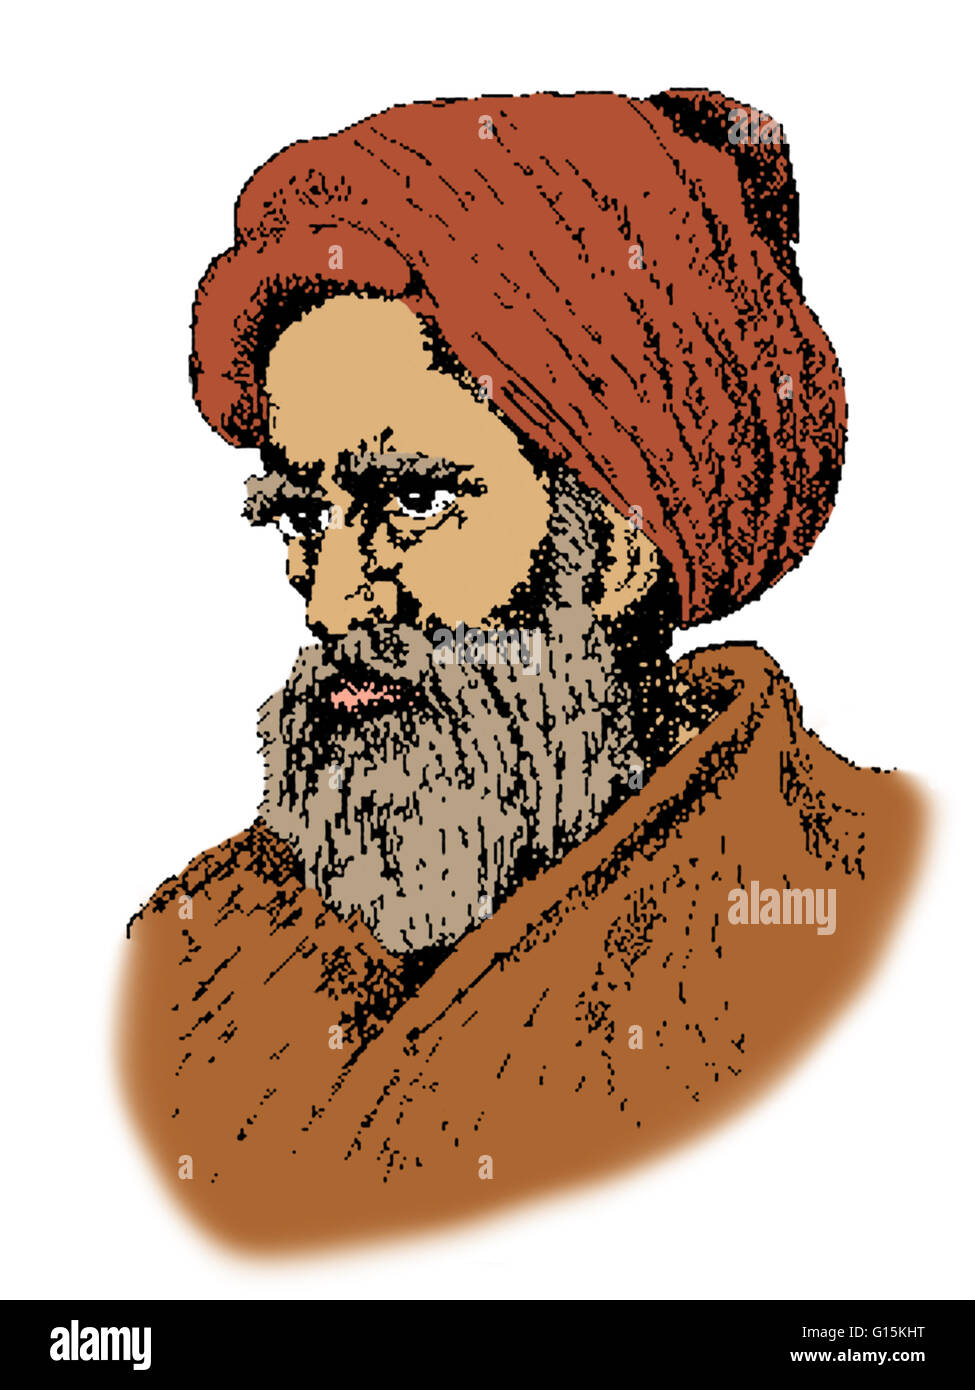 Colore esaltato ritratto di Abu Ali al-Hasan ibn al-Hasan ibn al-Haytham (Alhacen, Alhazen) (965-1040) era un musulmano, scienziato e polymath descritto in varie fonti come o arabo o persiano. Egli è spesso riferito come Ibn al-Haytham o al-Basri Foto Stock